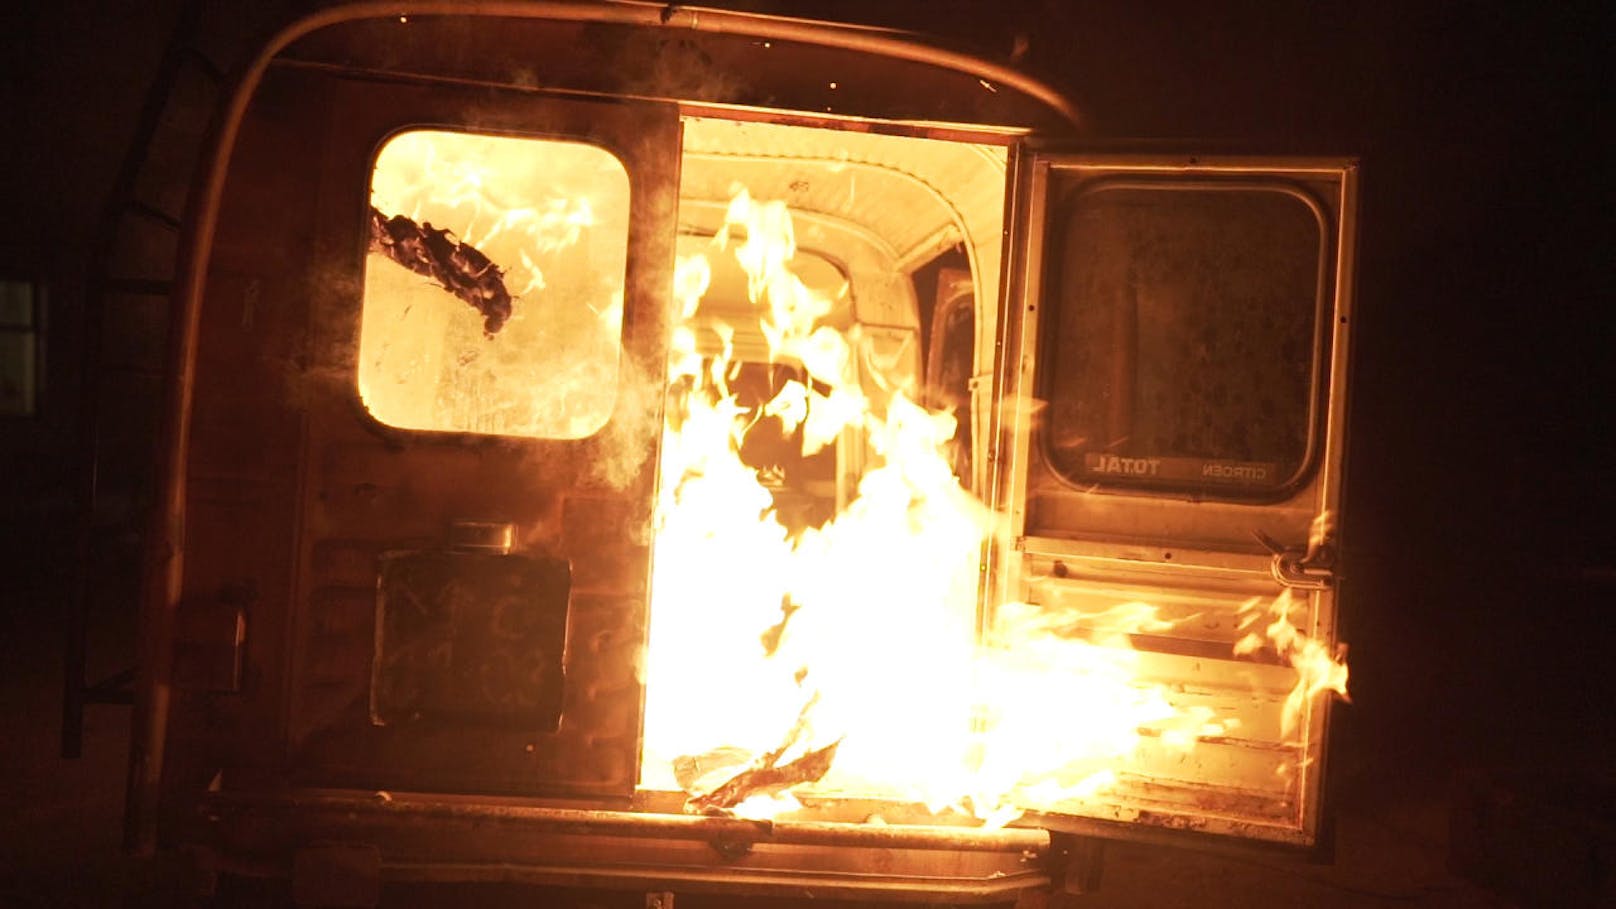 Ein abgebranntes Auto beim Haupteingang, ein verkohltes Klavier im Innenhof - das riecht nach einem Pyromanen! Aber einem mit Kunstsinn.